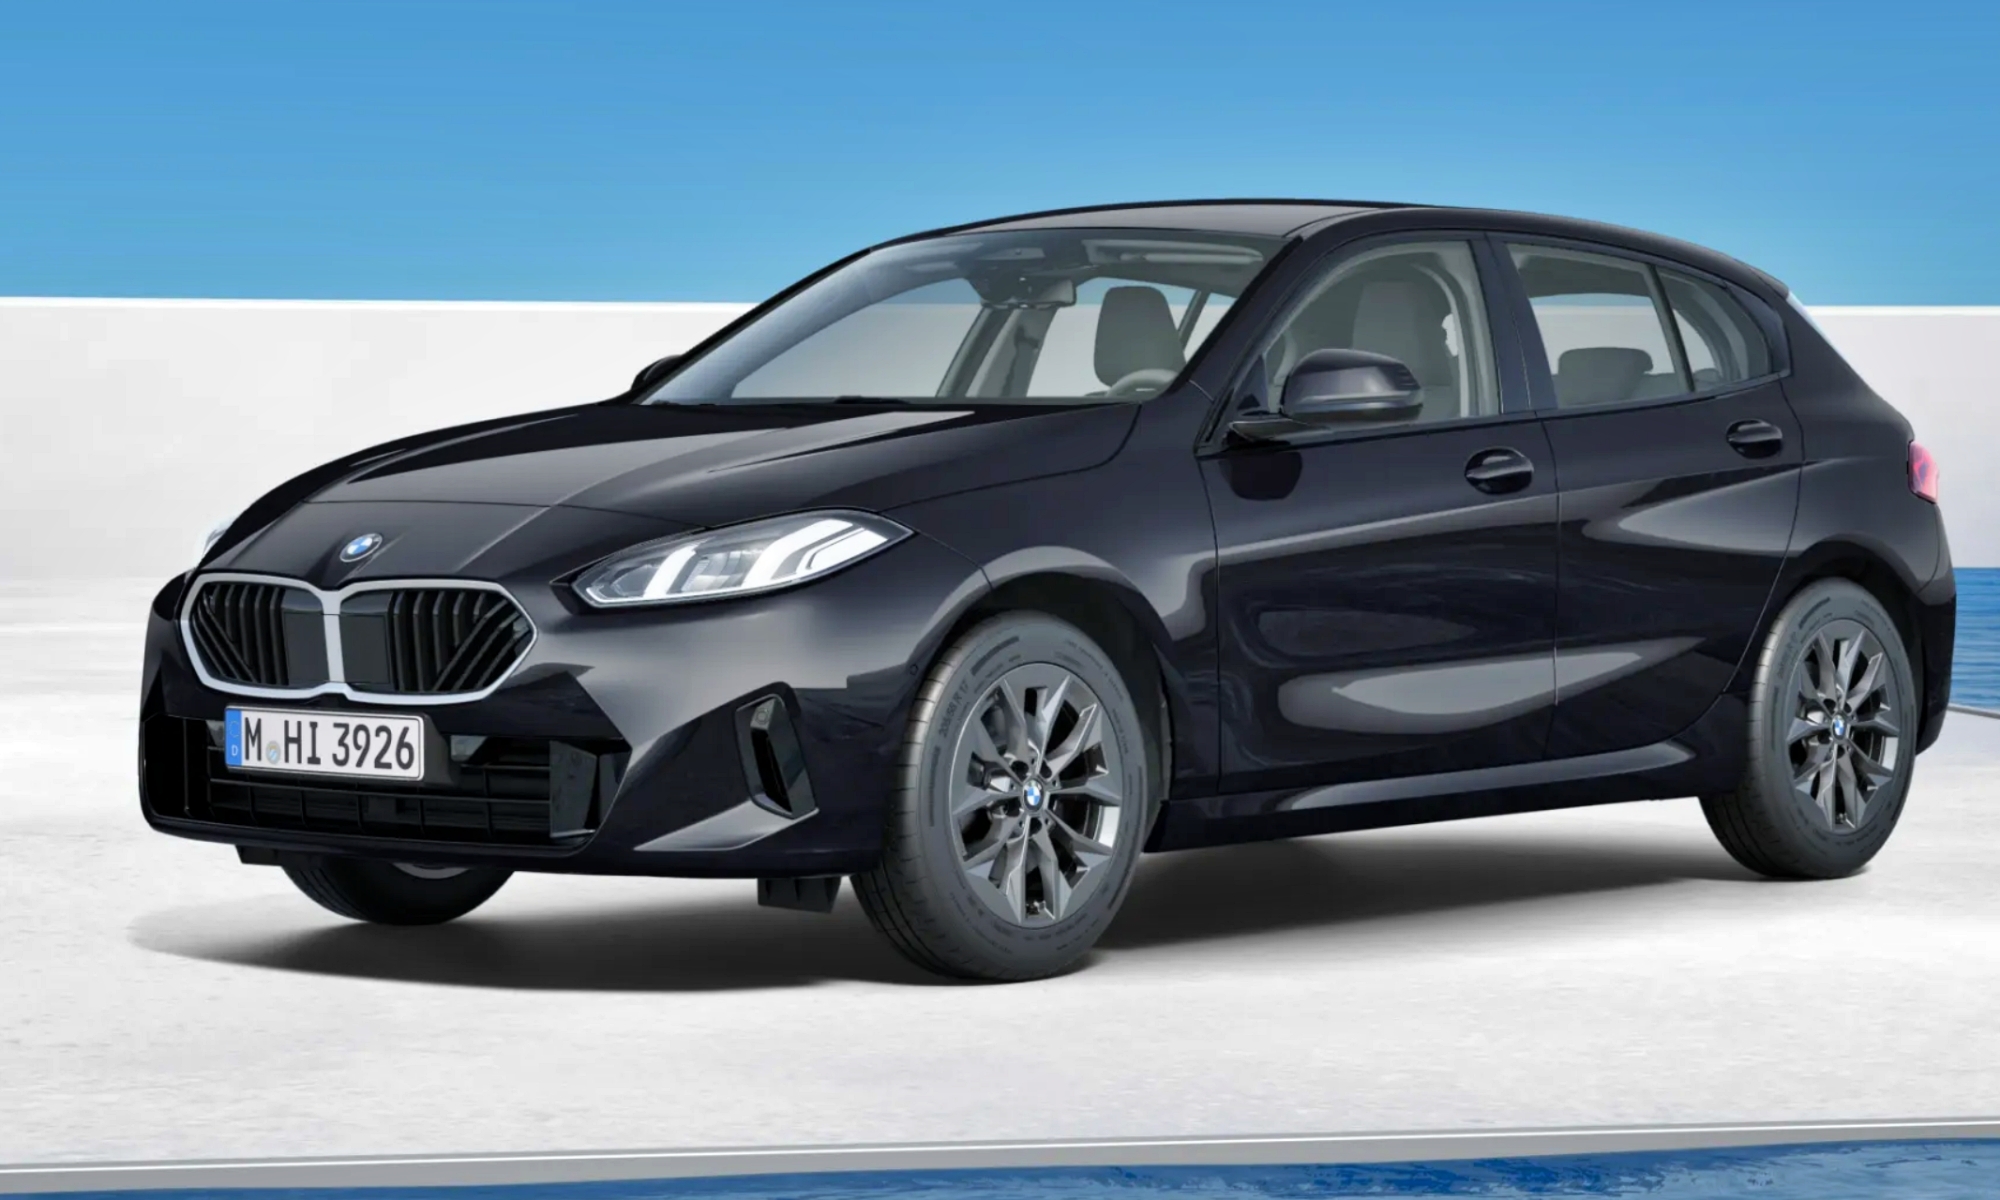 Aspecto del BMW 118d más básico posible, de 39.000 euros de precio.